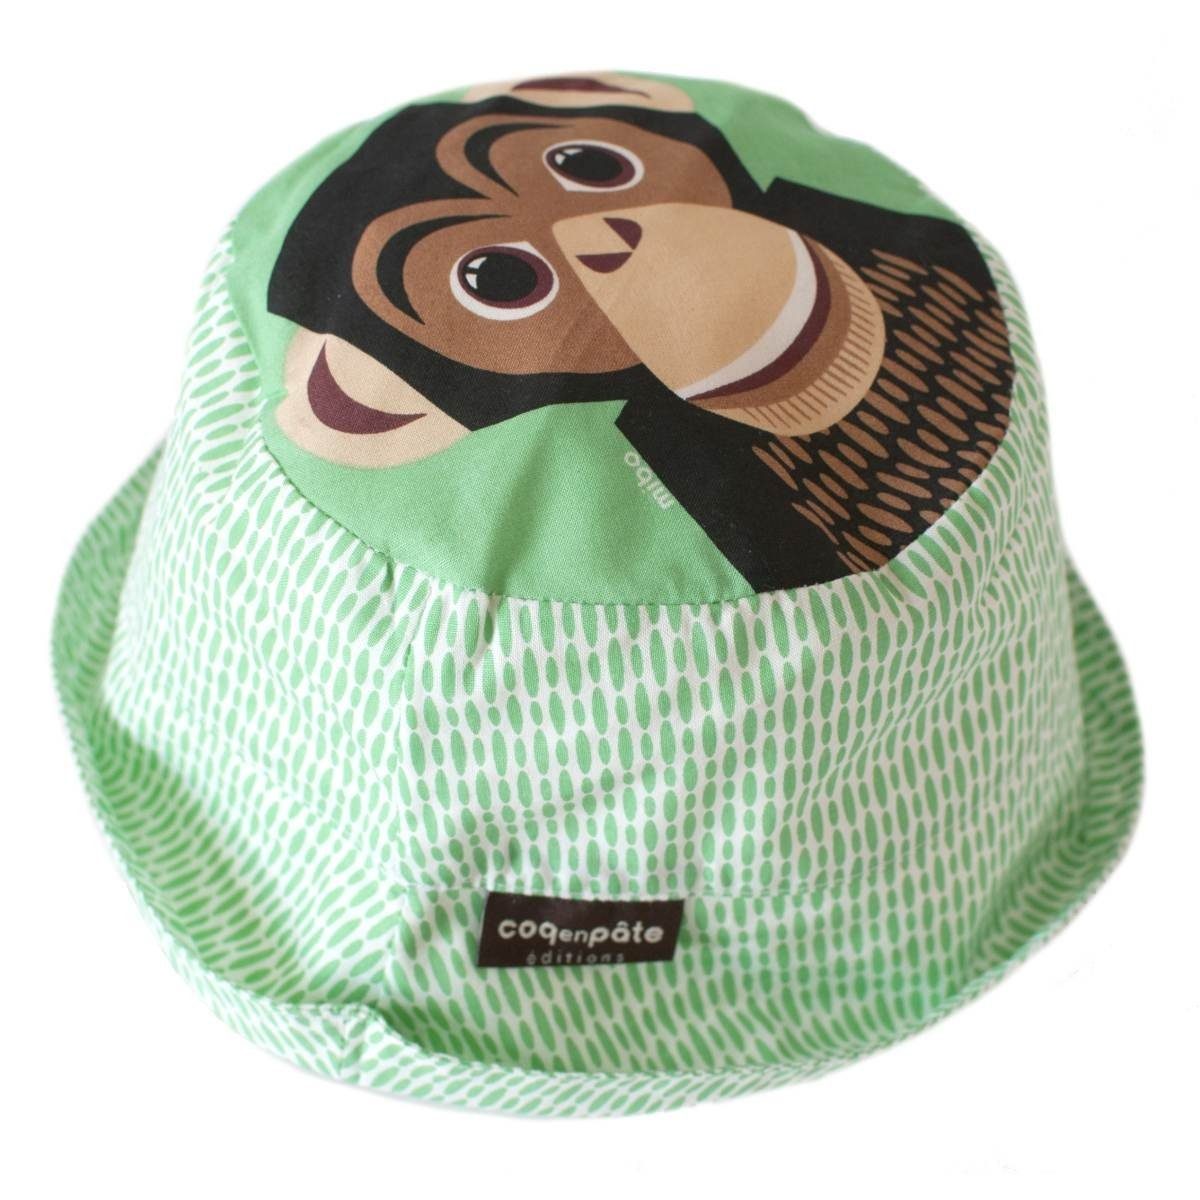 COQ EN PATE Sonnenhut Farbenfroher Kinder-Hut mit Tiermotiven und Mustern Sonnenschutz Schimpanse - Größe: L